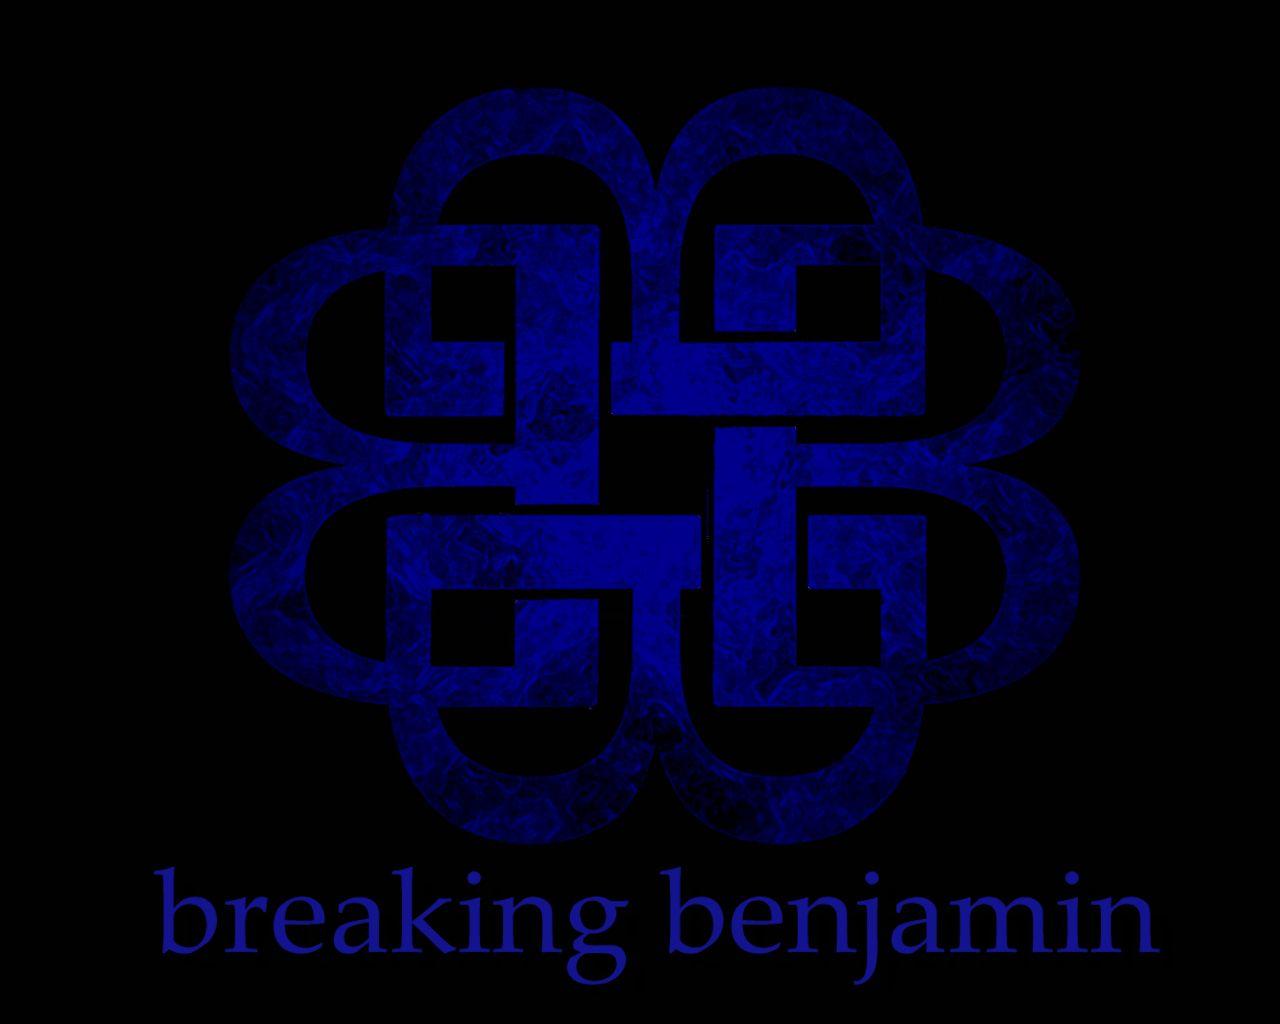 Breaking Benjamin Logo - Breaking Benjamin image breaking benjamin logo HD wallpaper